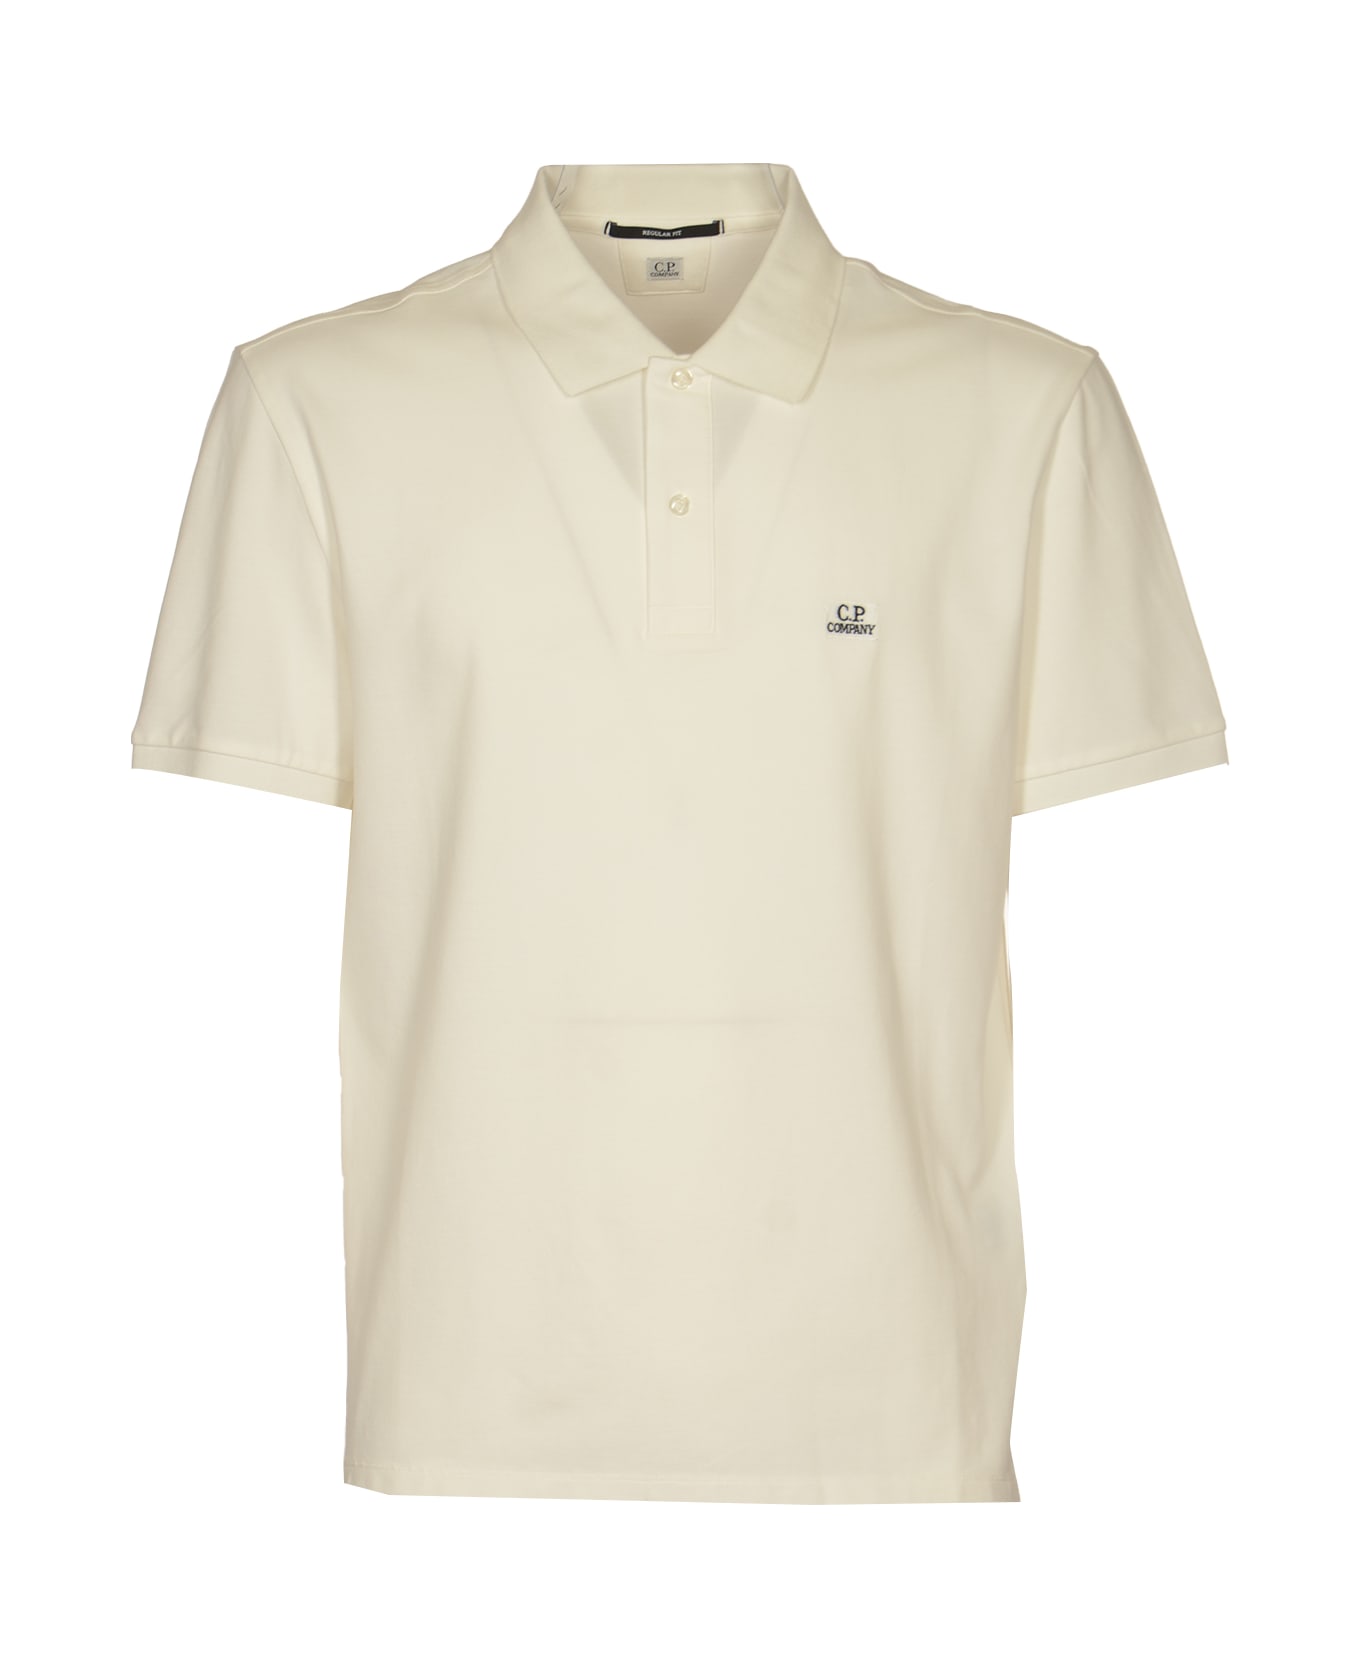 C.P. Company Stretch Piquet Short-sleeved Polo Shirt - Gauze White